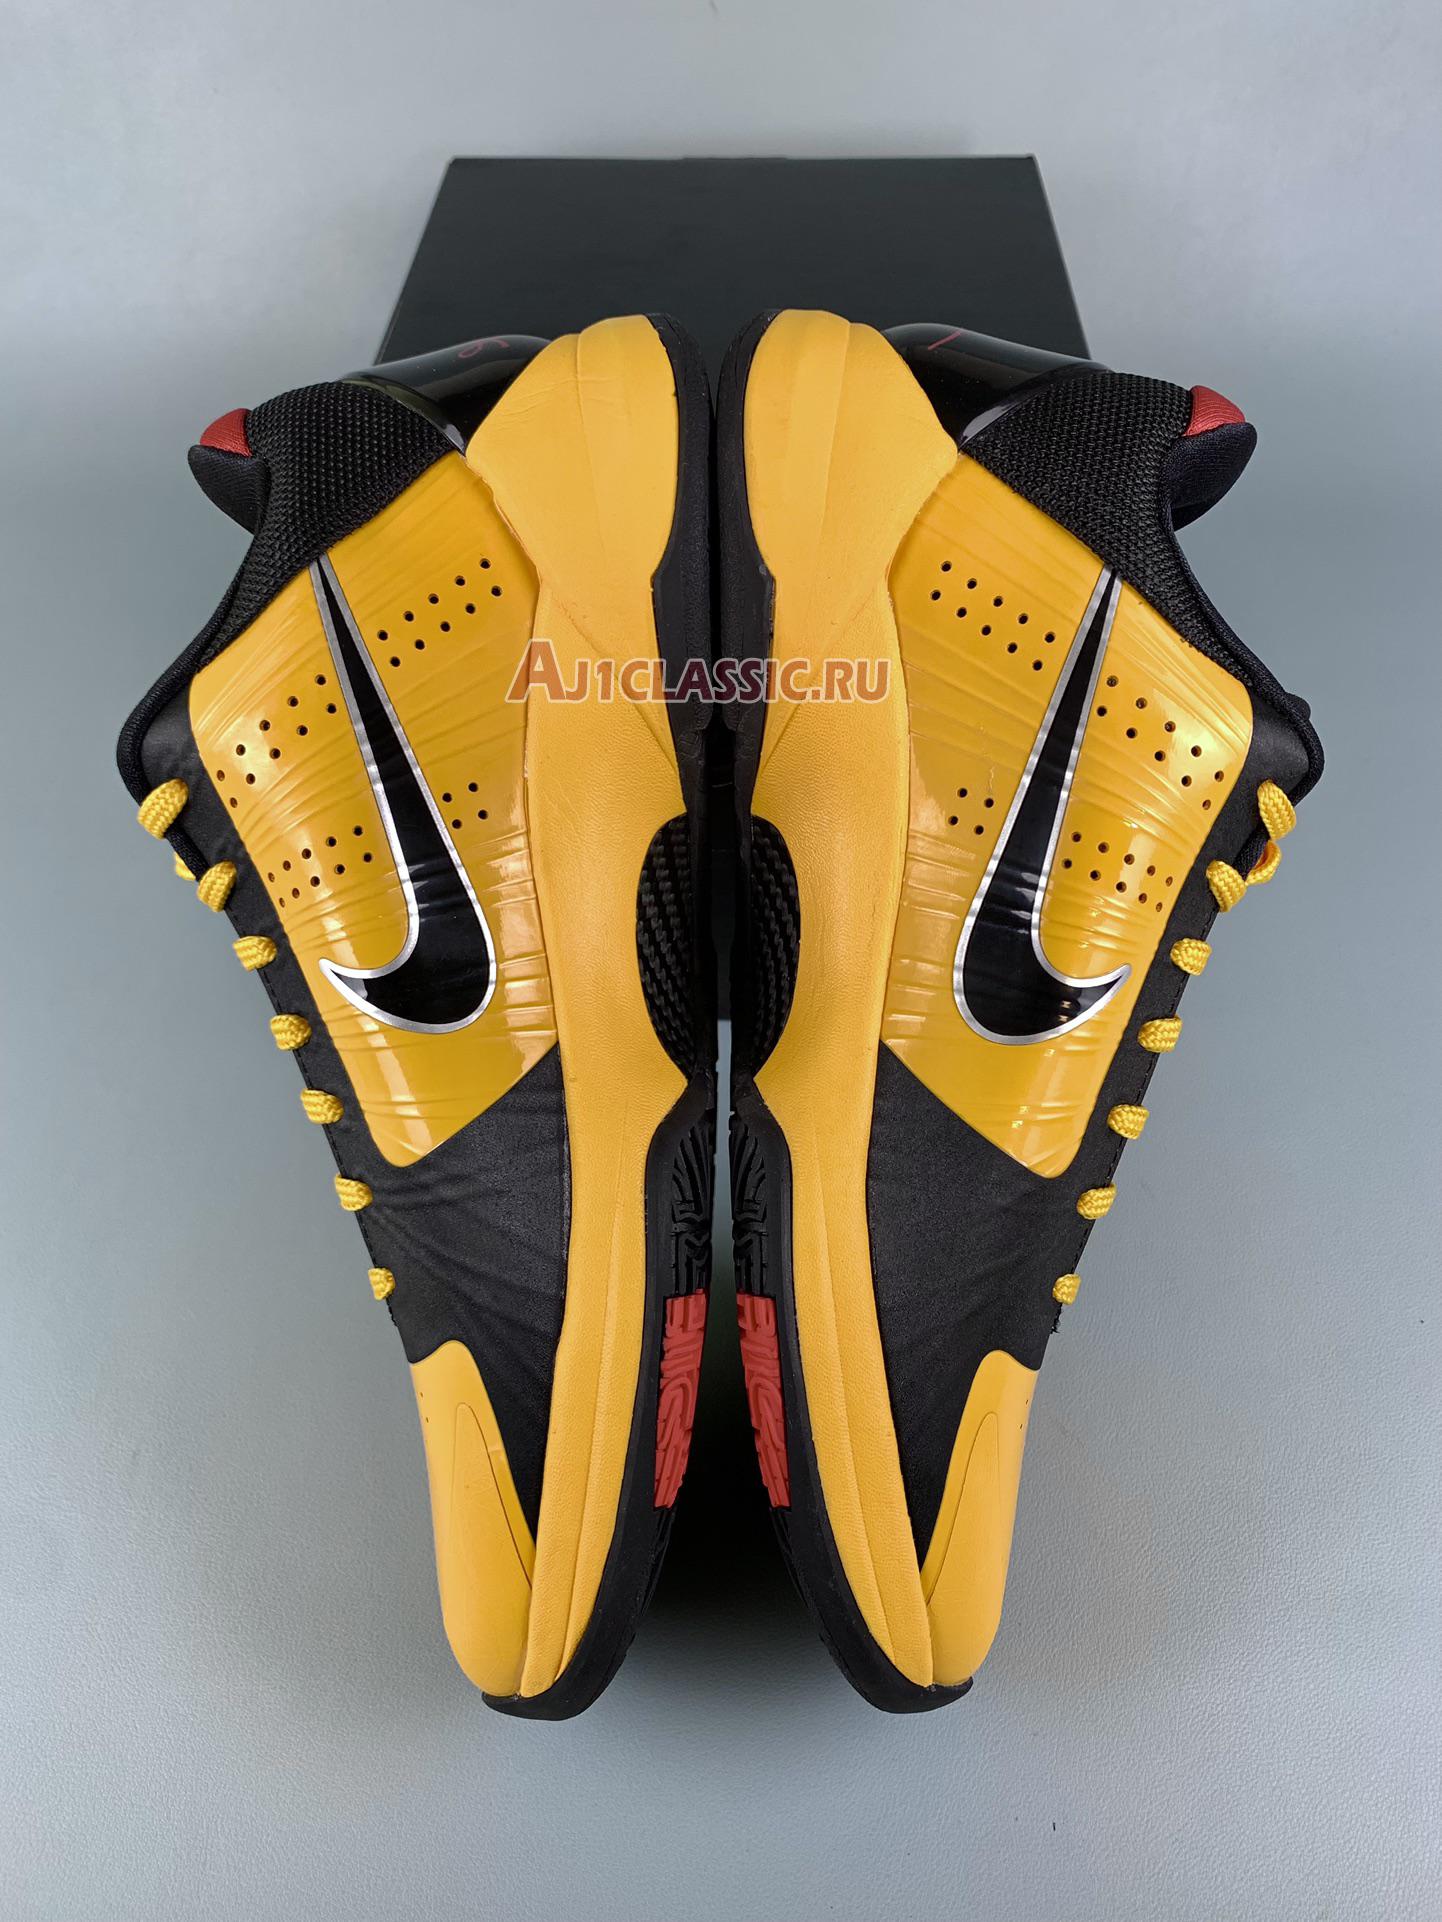 Nike Zoom Kobe 5 "Bruce Lee" 386429-701